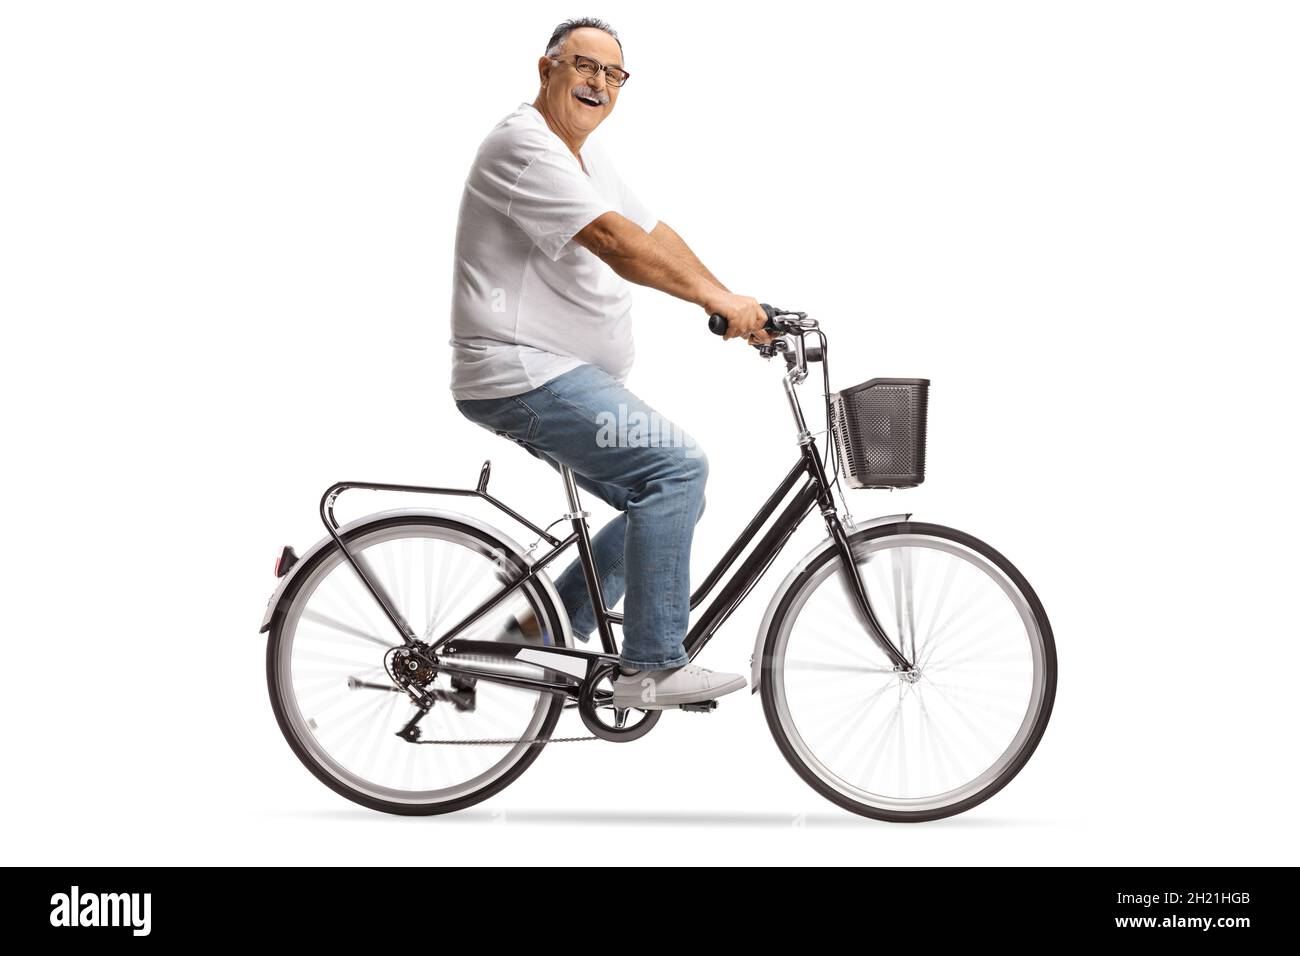 Lächelnder reifer Mann in Jeans und weißem T-Shirt auf einem Fahrrad isoliert auf weißem Hintergrund Stockfoto